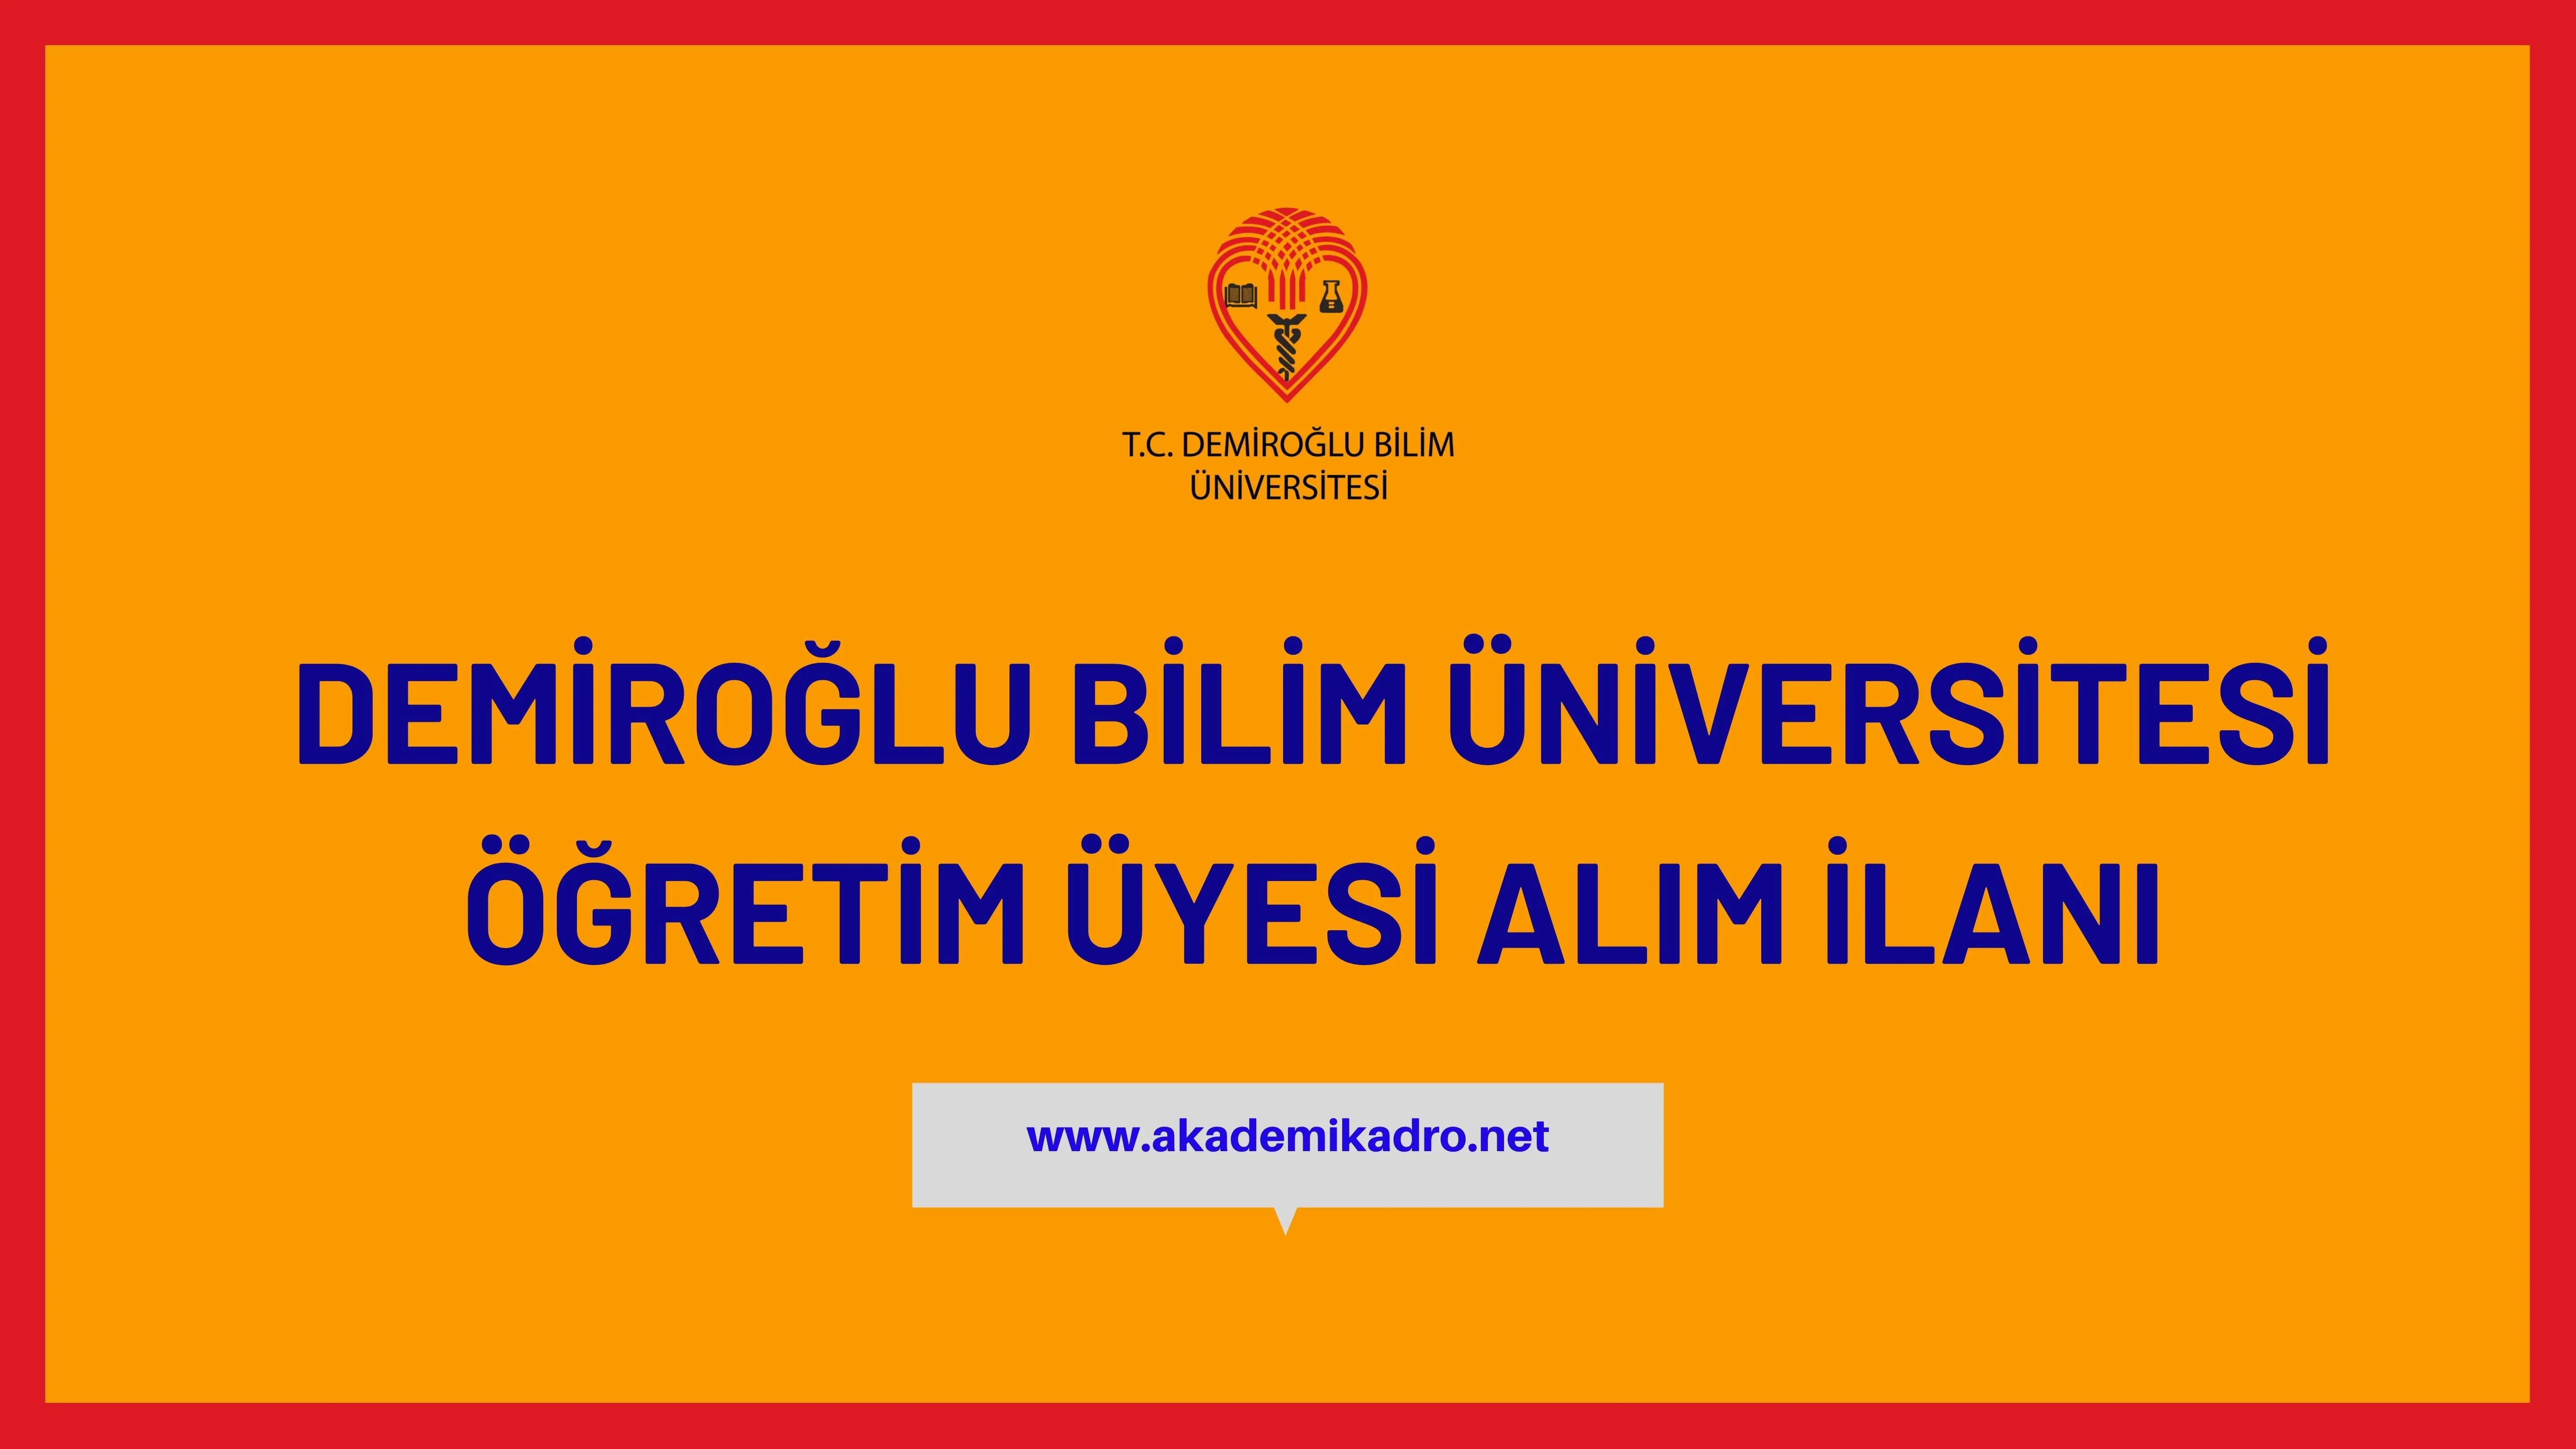 Demiroğlu Bilim Üniversitesi 5 akademik personel alacak.